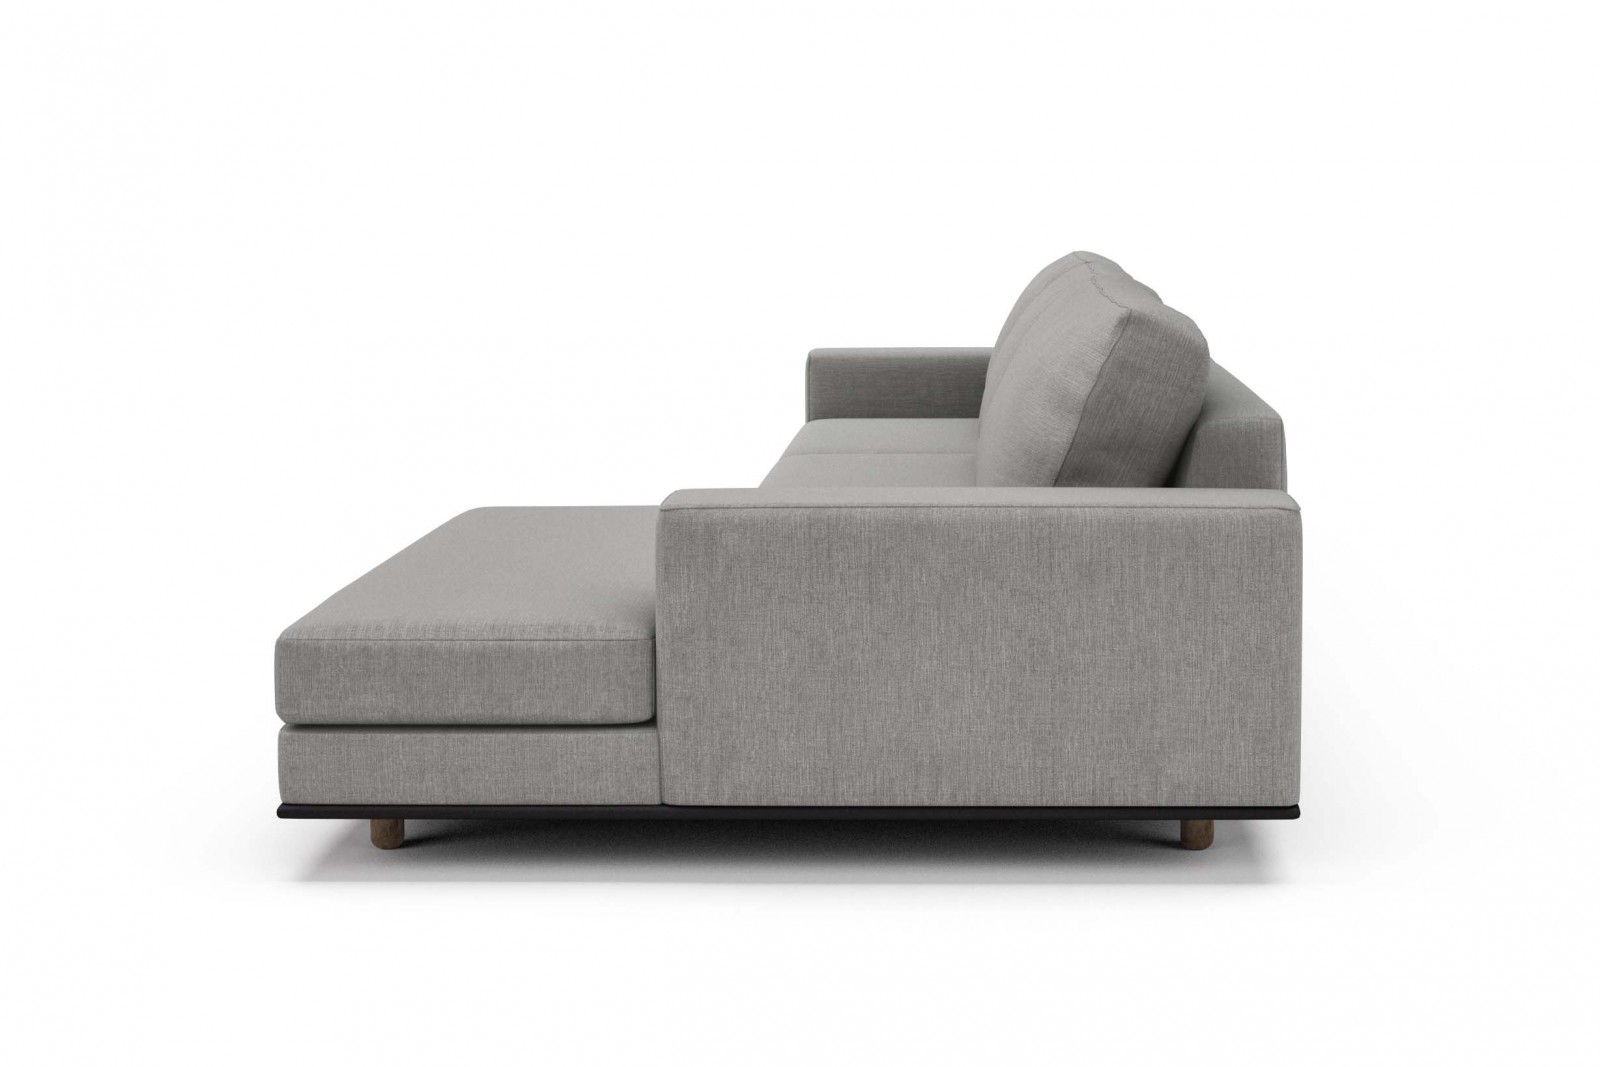 126" Modular sofa